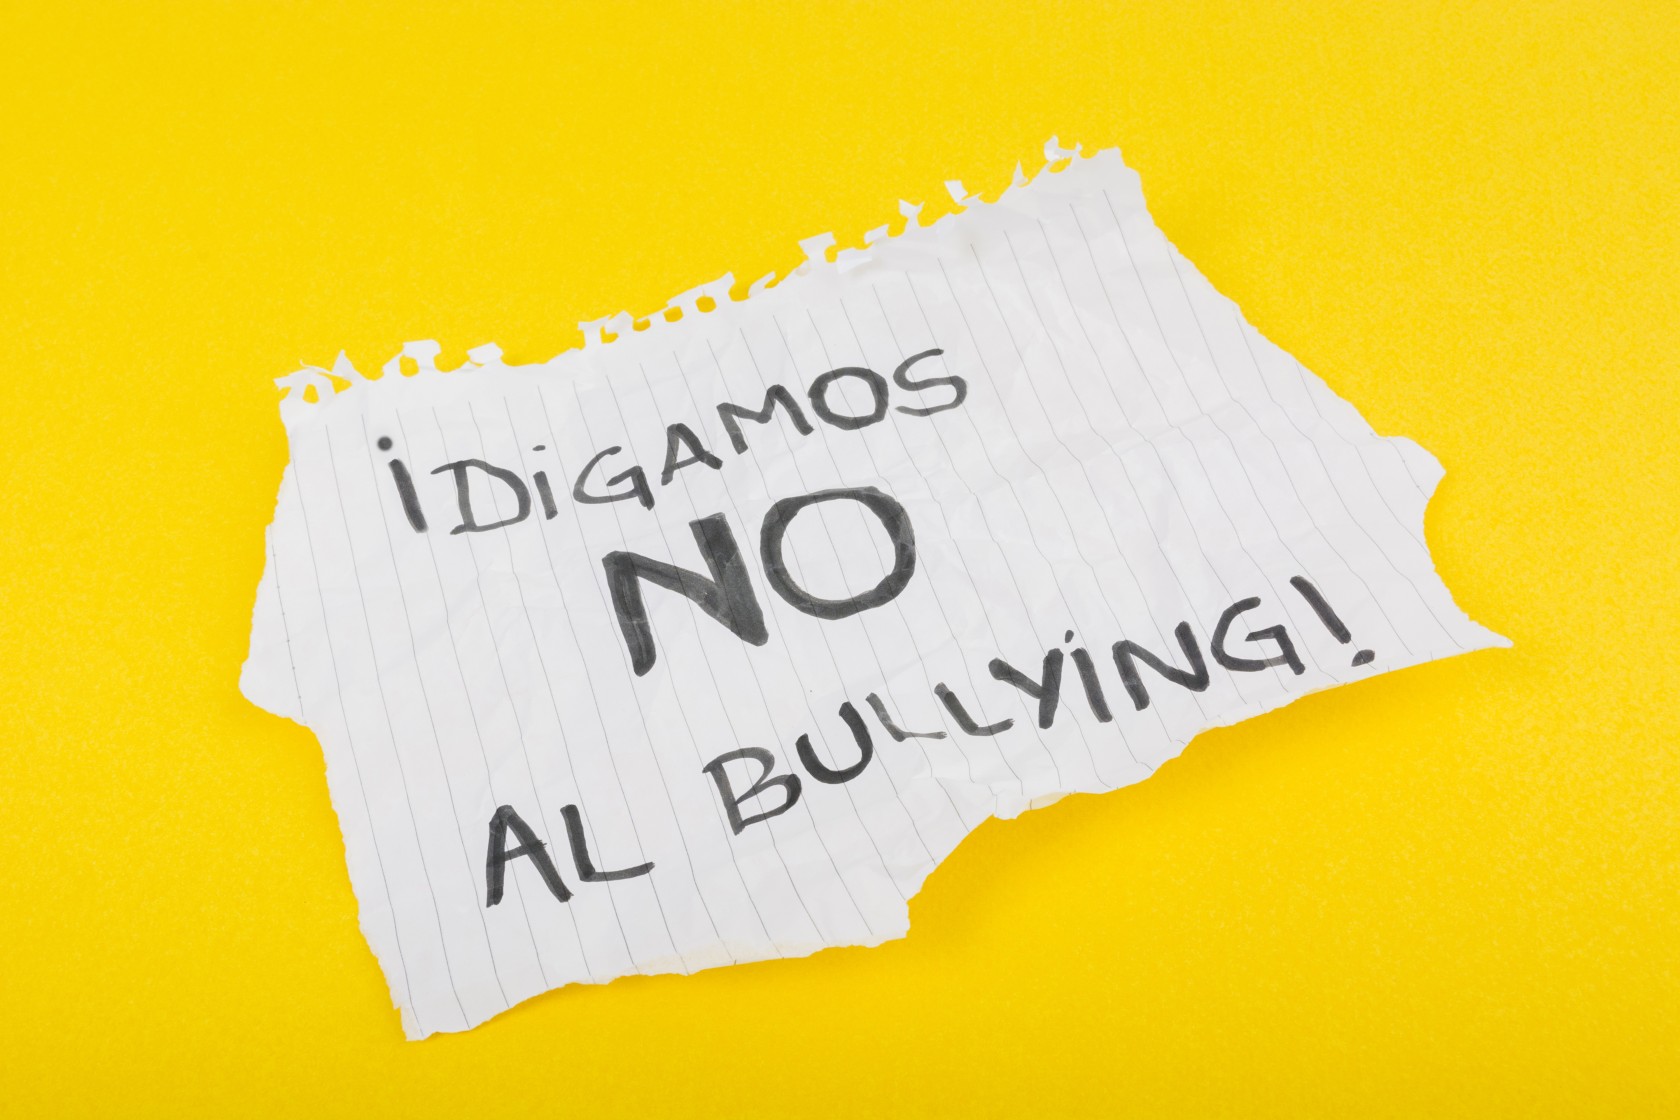 spanish-slogan-on-paper-sheet-against-bullying.jpg